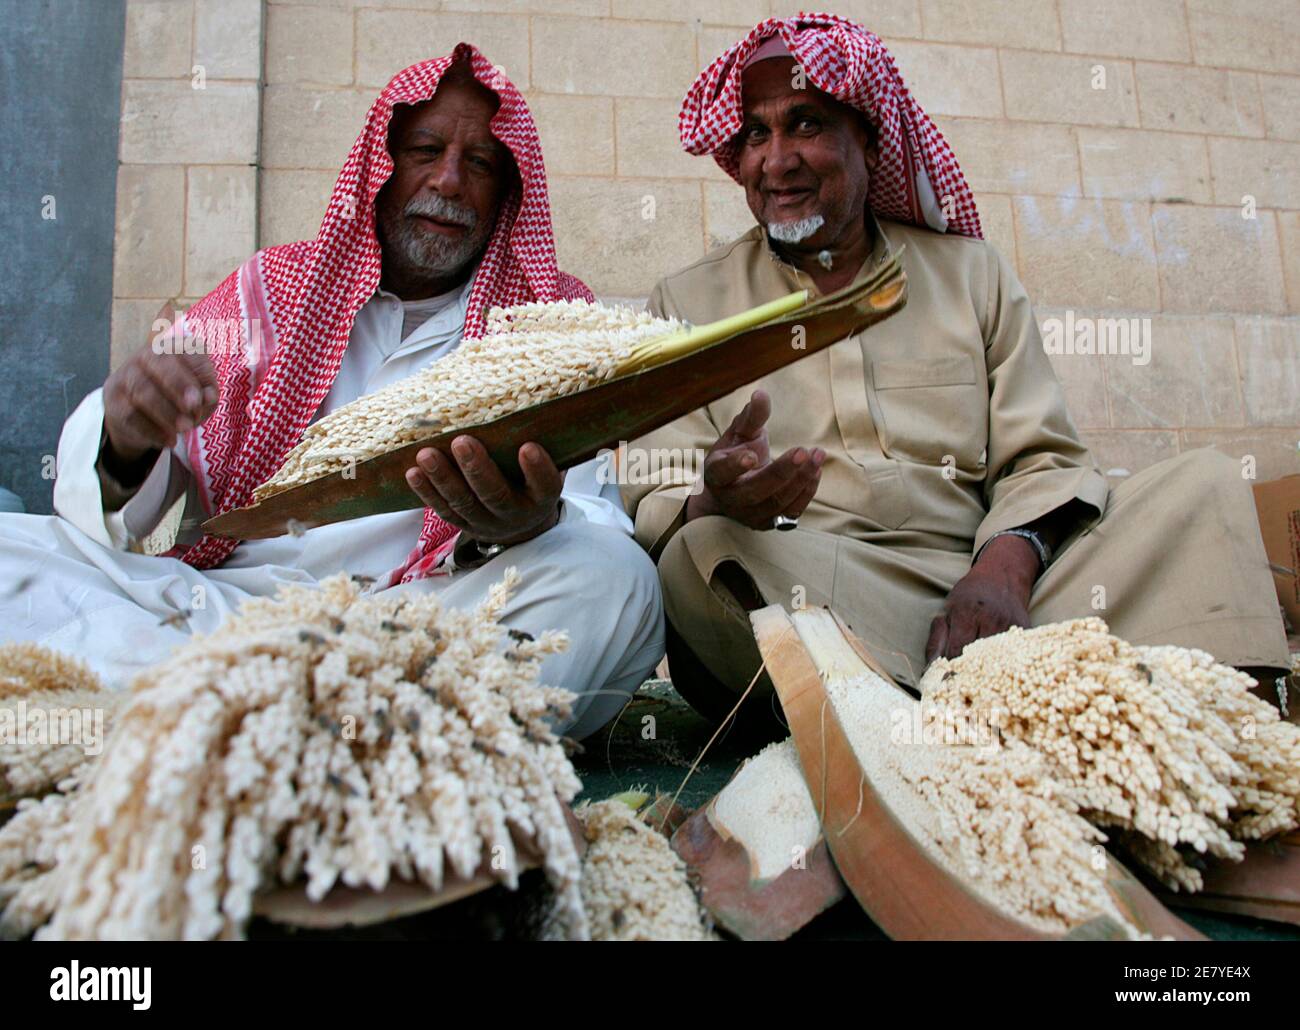 Venditori ambulanti vendono polline di palma a Riyadh 3 marzo 2008. Il polline viene utilizzato nella preparazione di un afrodisiaco locale, popolare tra gli uomini. REUTERS/Fahad Shadeed (ARABIA SAUDITA) Foto Stock